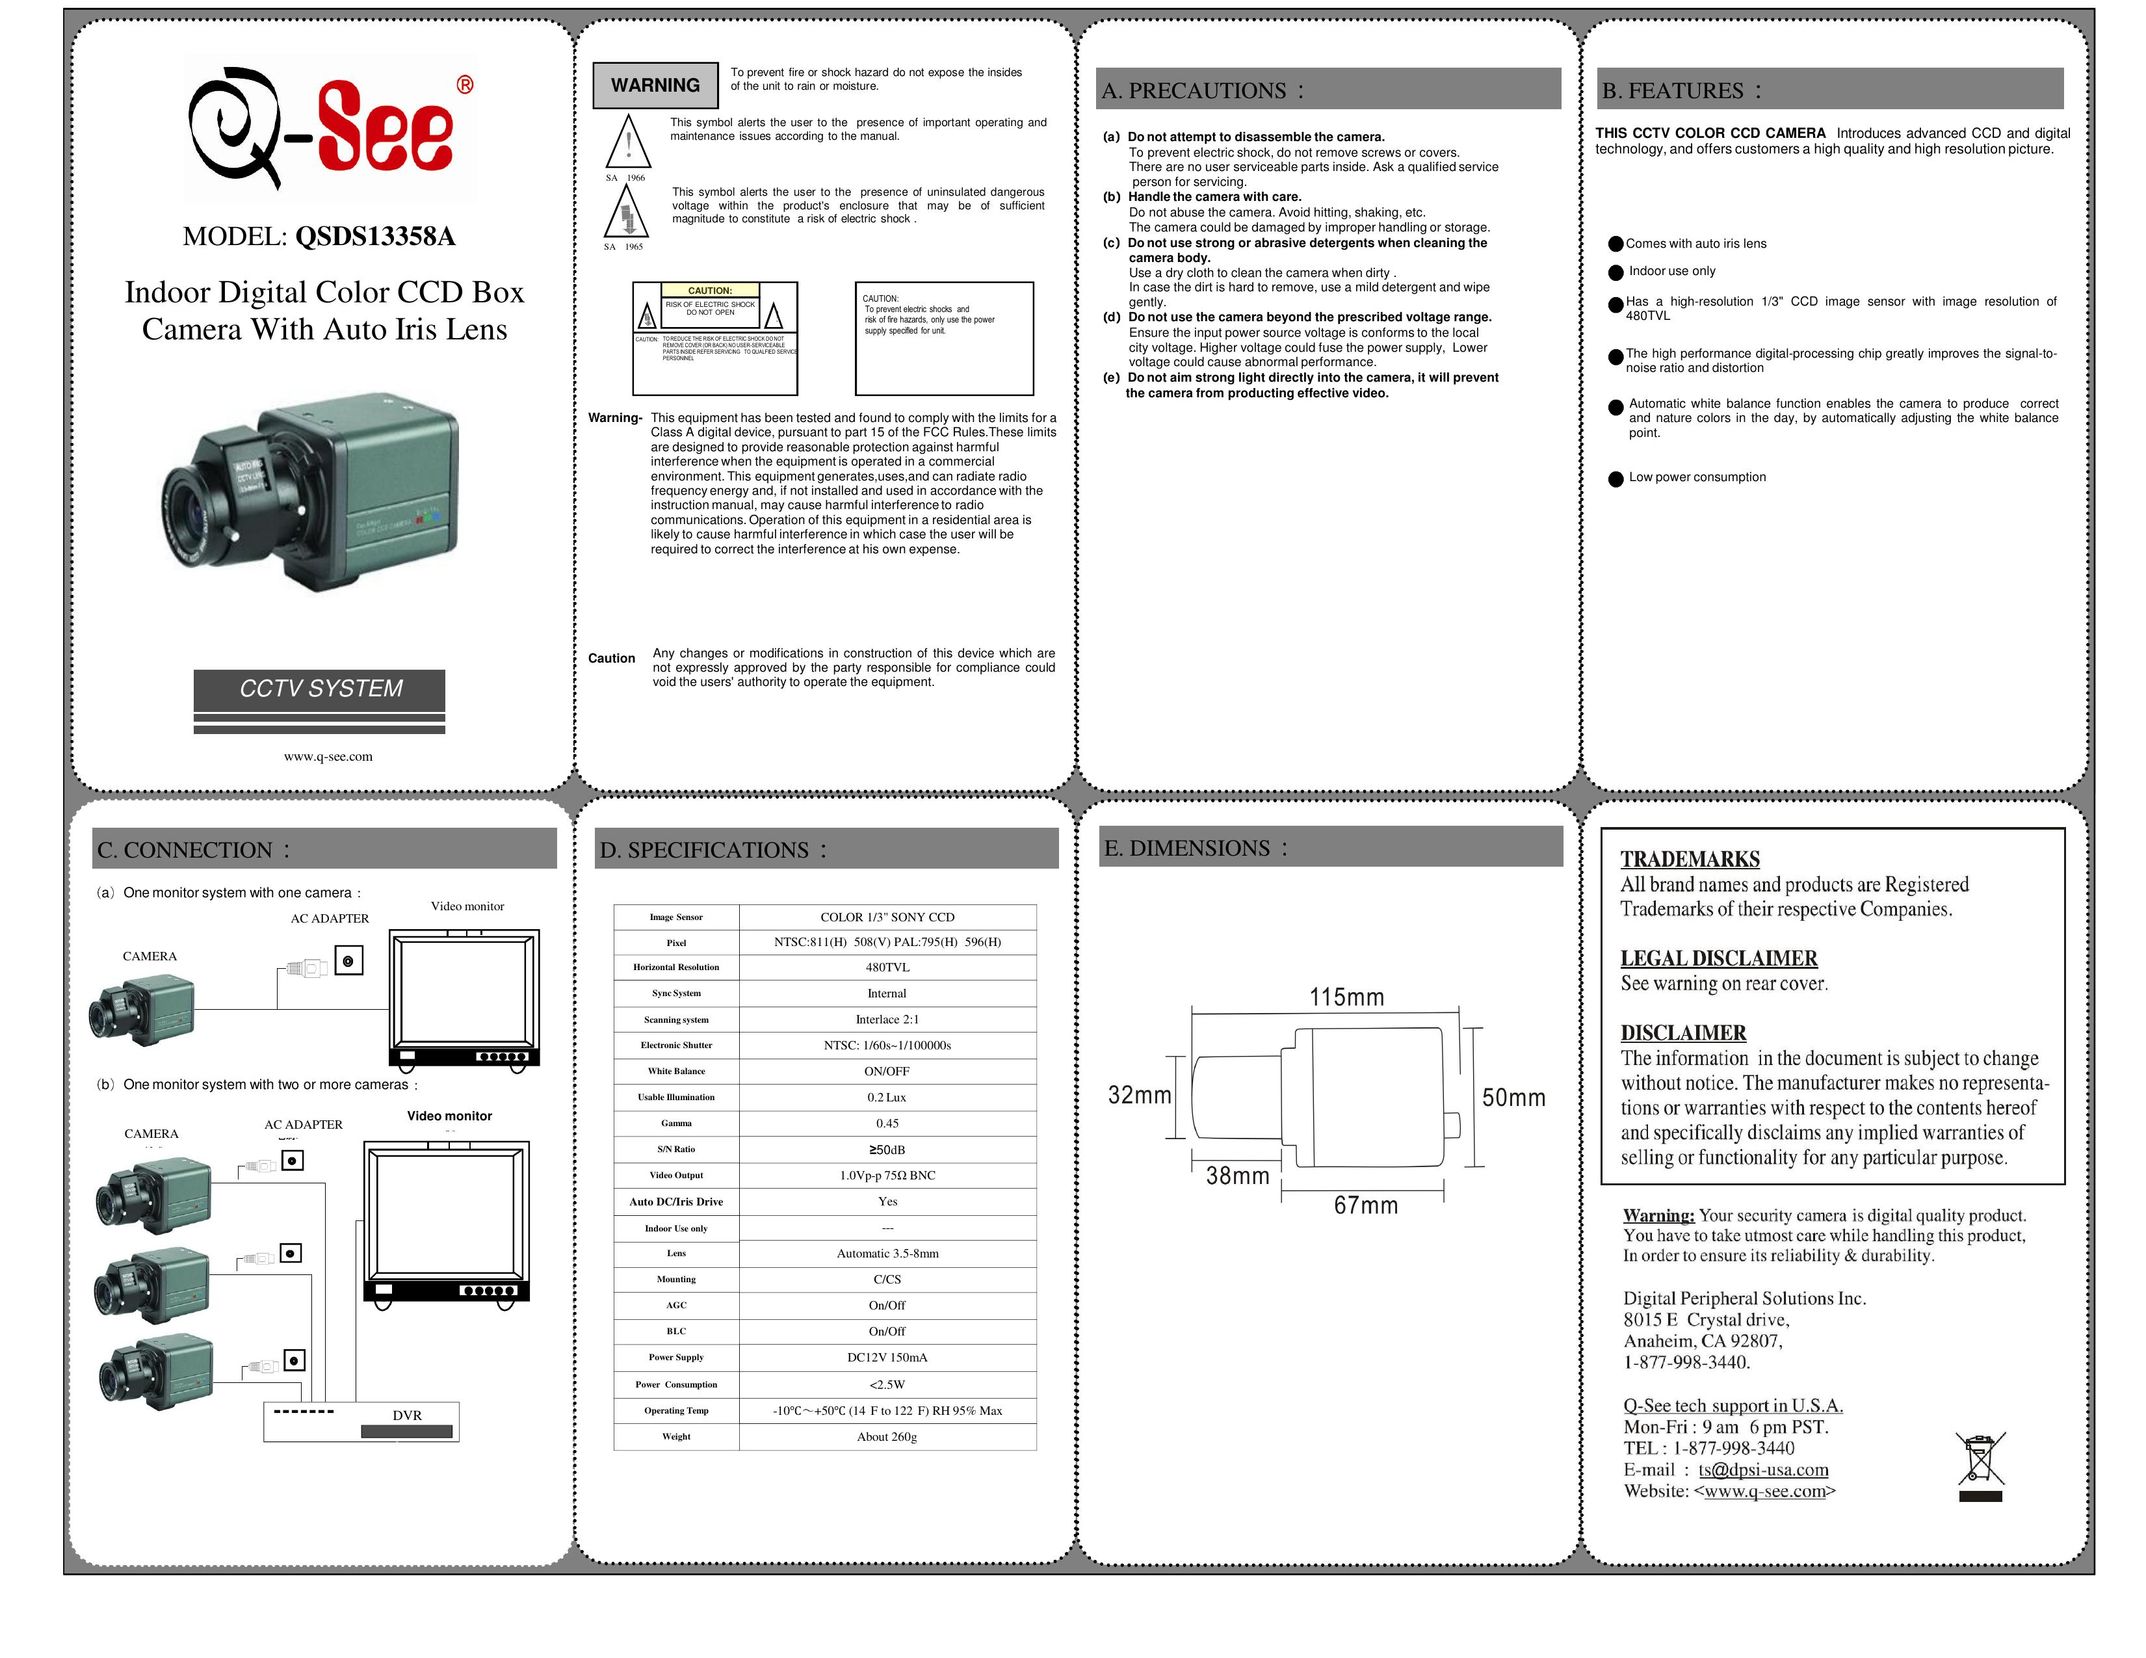 Q-See QSDS13358A Fan User Manual